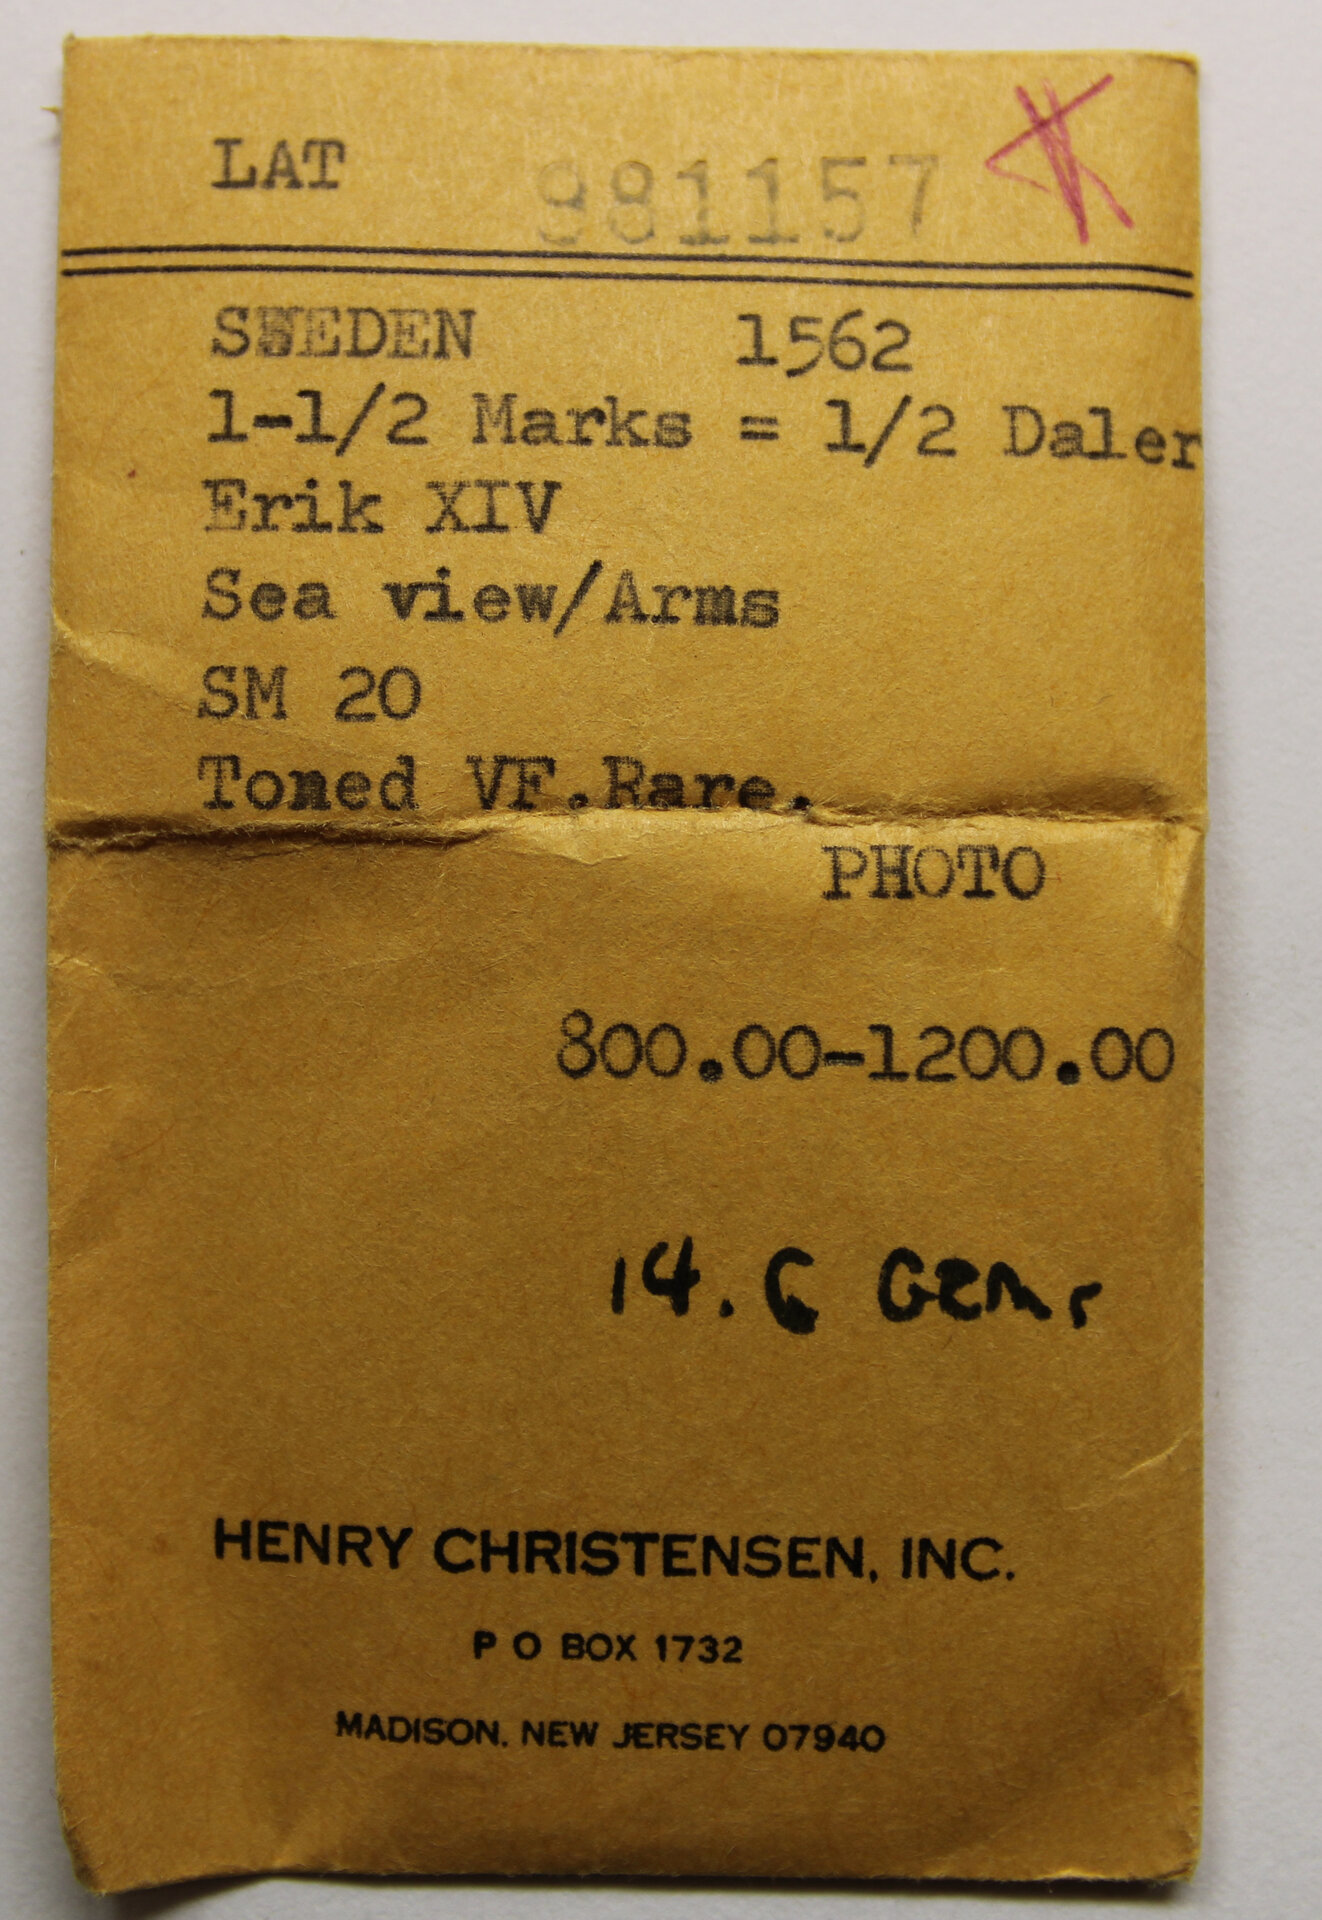 D-Camera Sweden 1.5 marks  Henry Christensen envelope  4-20-21.jpg